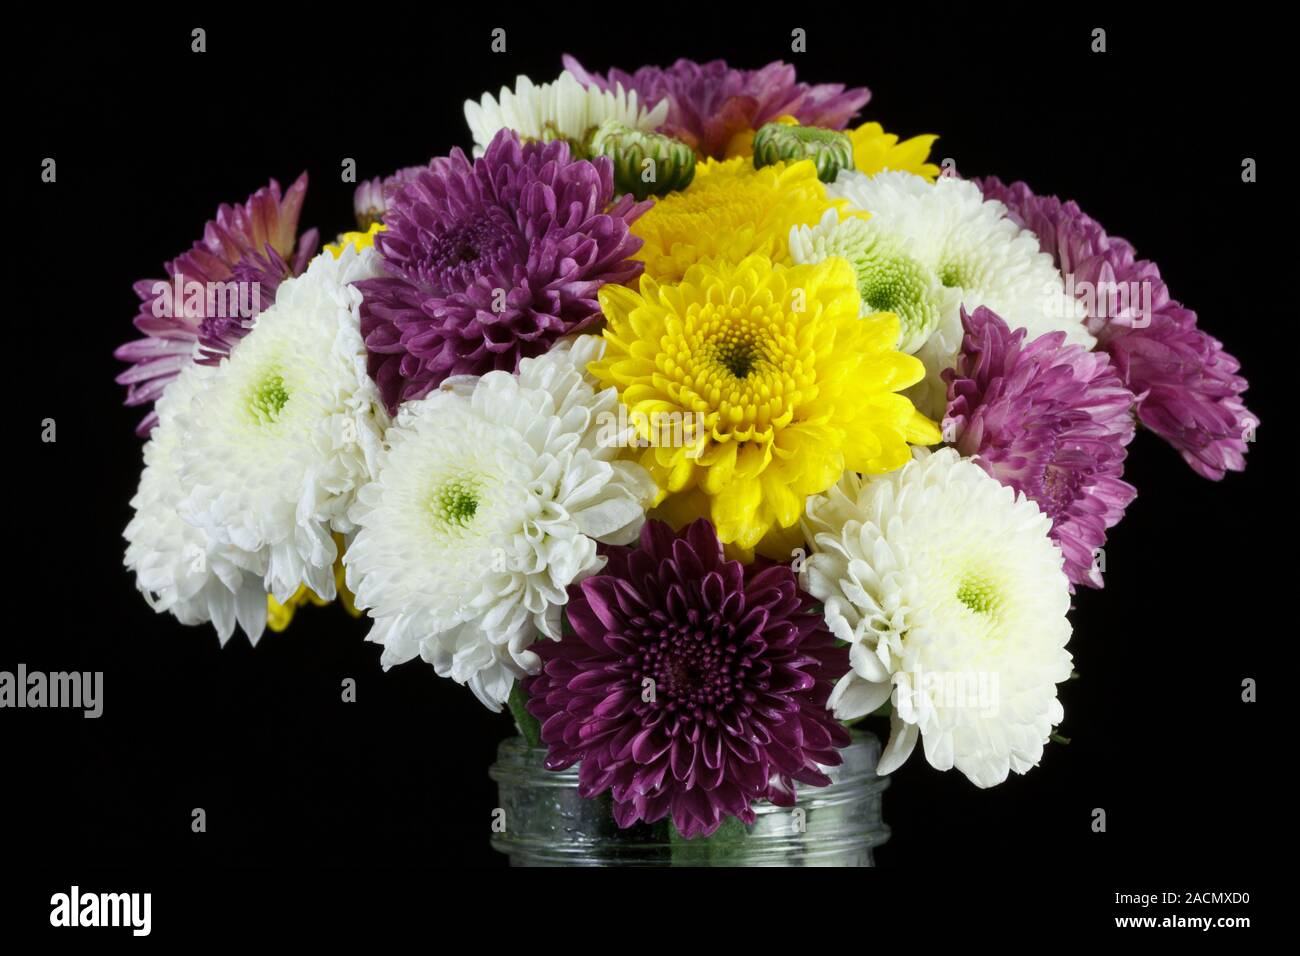 Chrysanthemum daisies Stock Photo